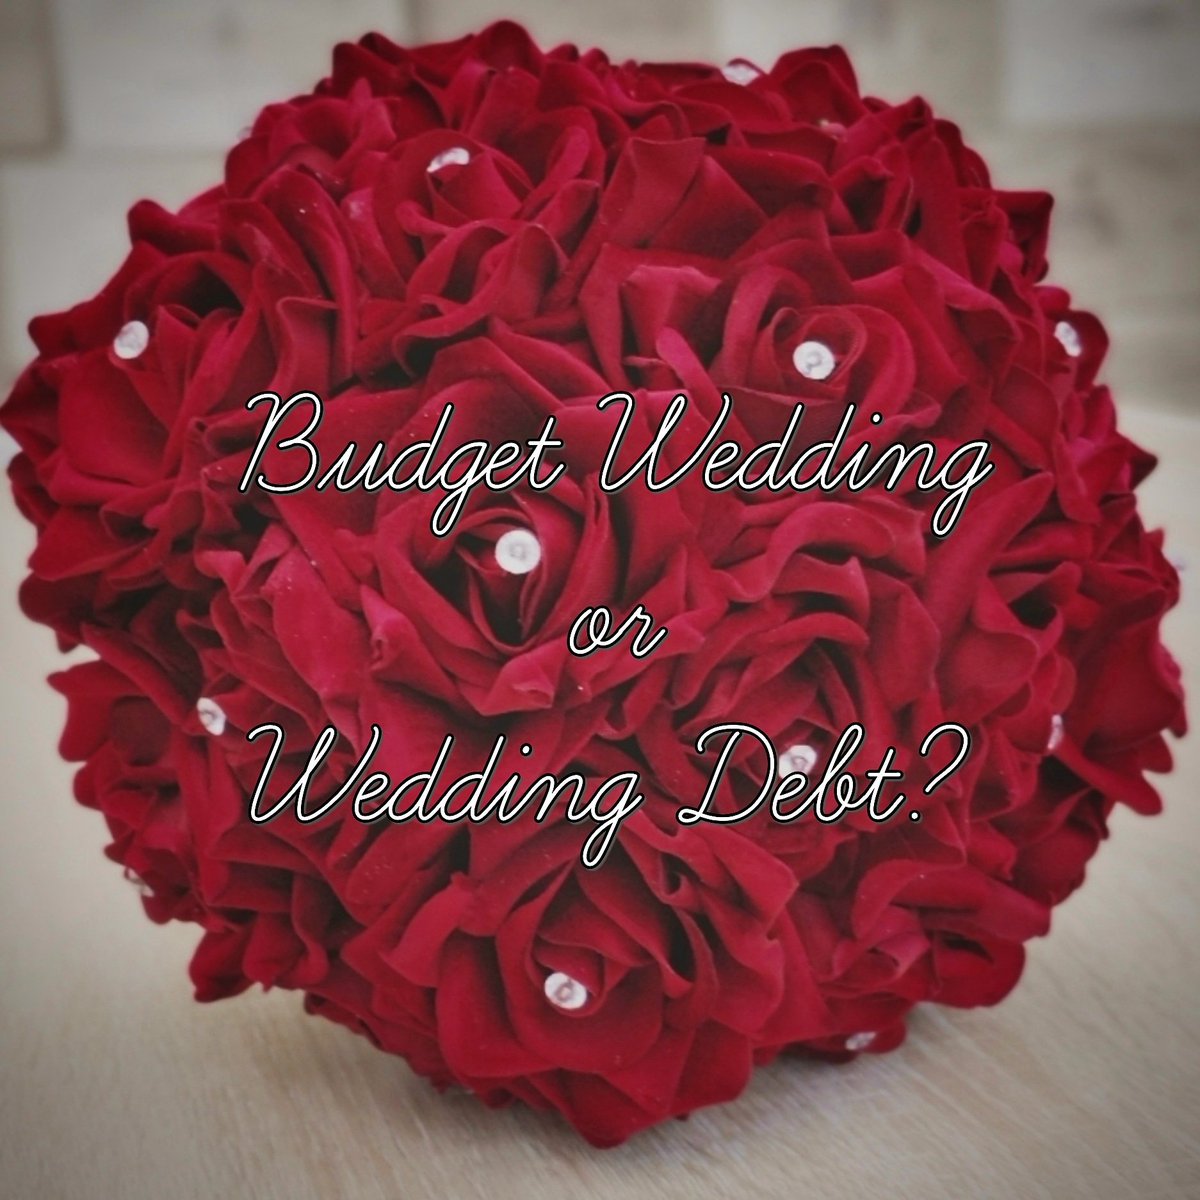 #newblogpost #blog #weddingblog #debtfree #brideonabudget

thriftyclair.com/2019/05/28/wed…